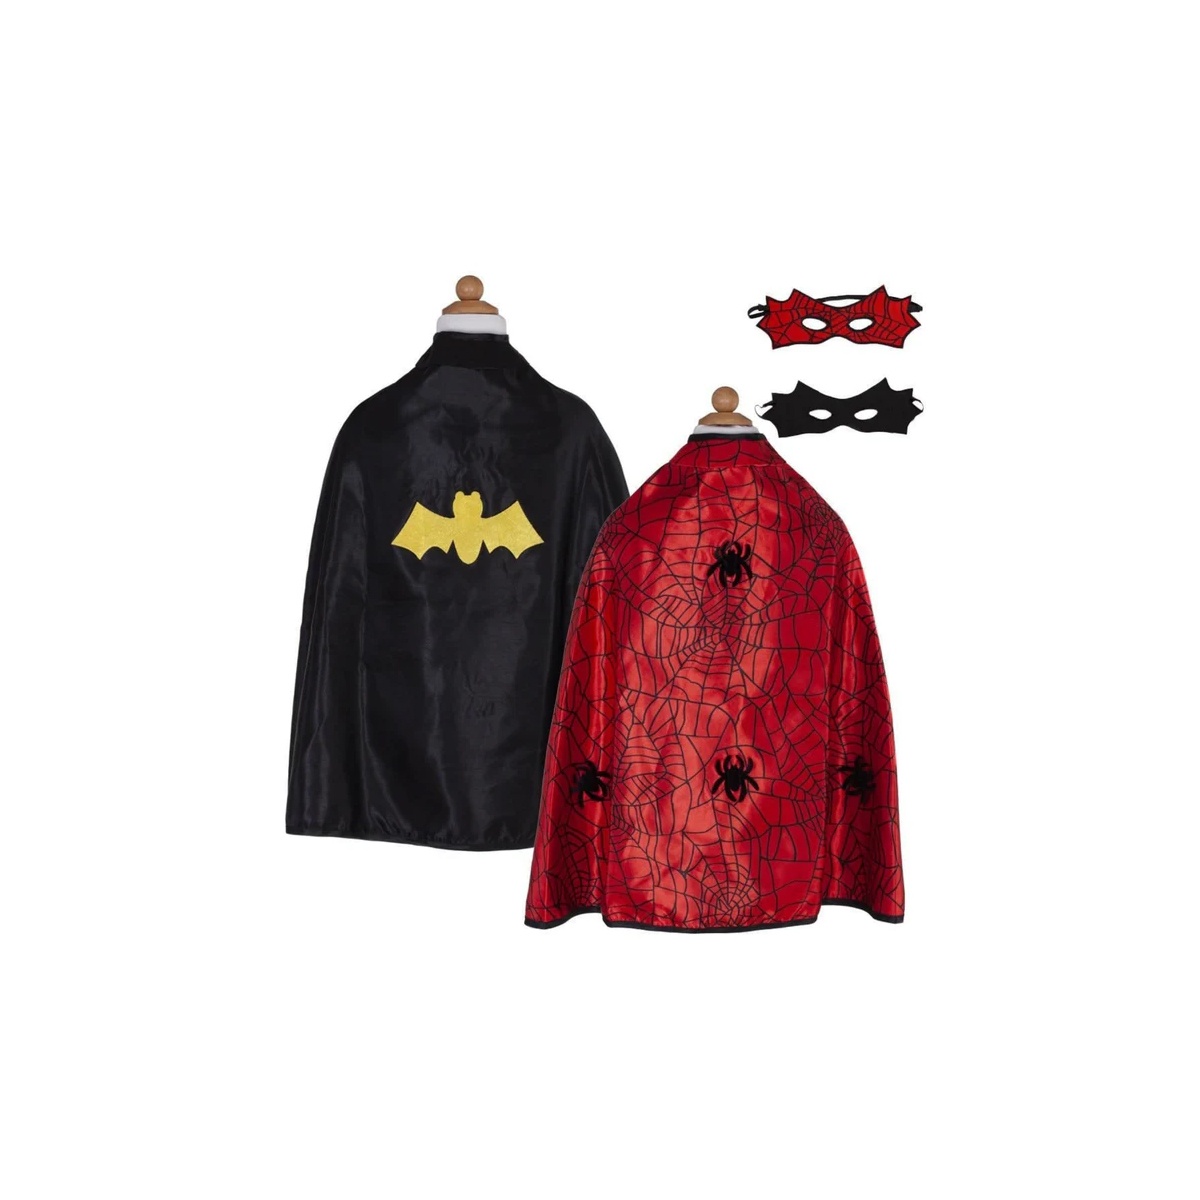 Kostüm Spider/Bat Cape wendbar mit Maske 4-6 Jahre